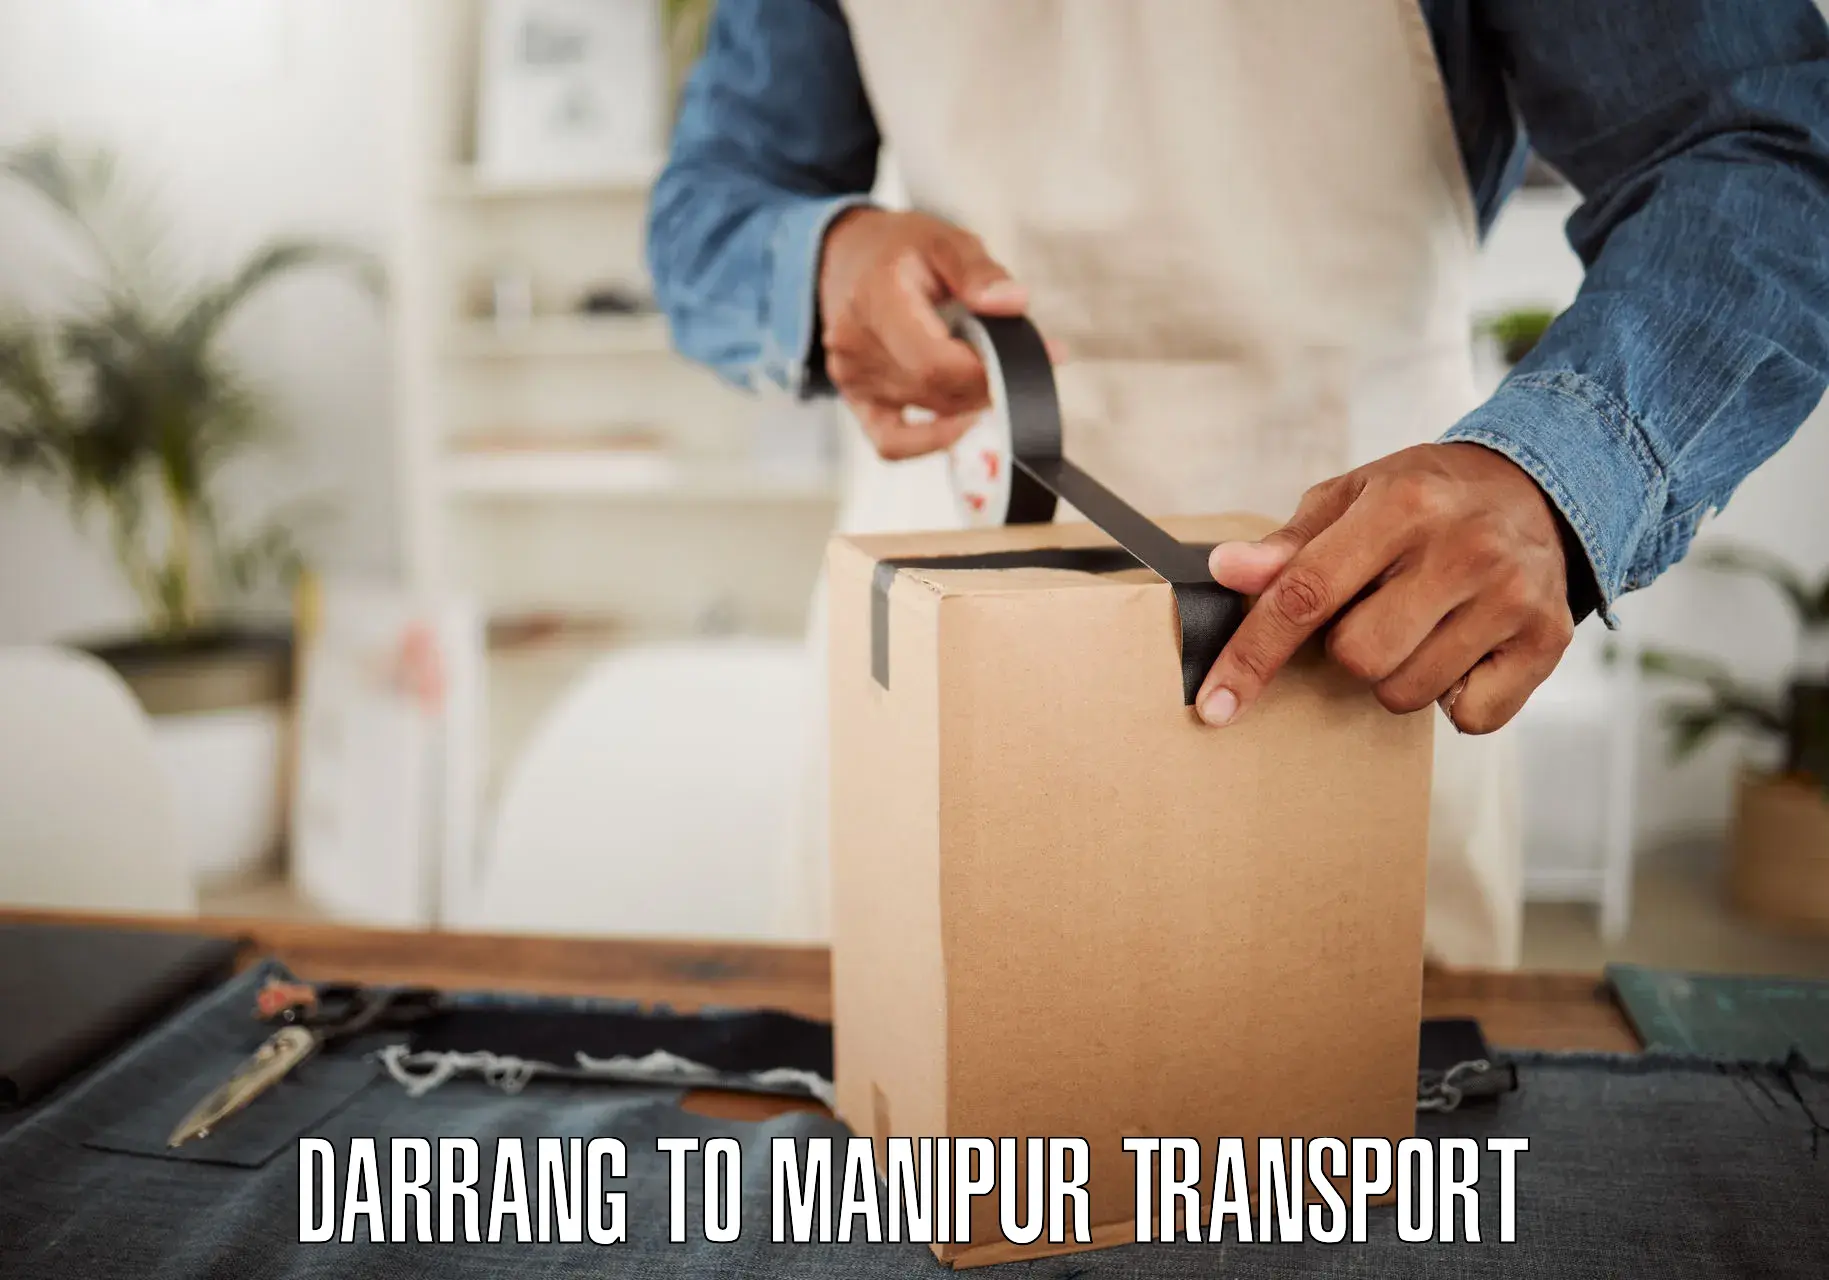 Cargo train transport services Darrang to Moirang